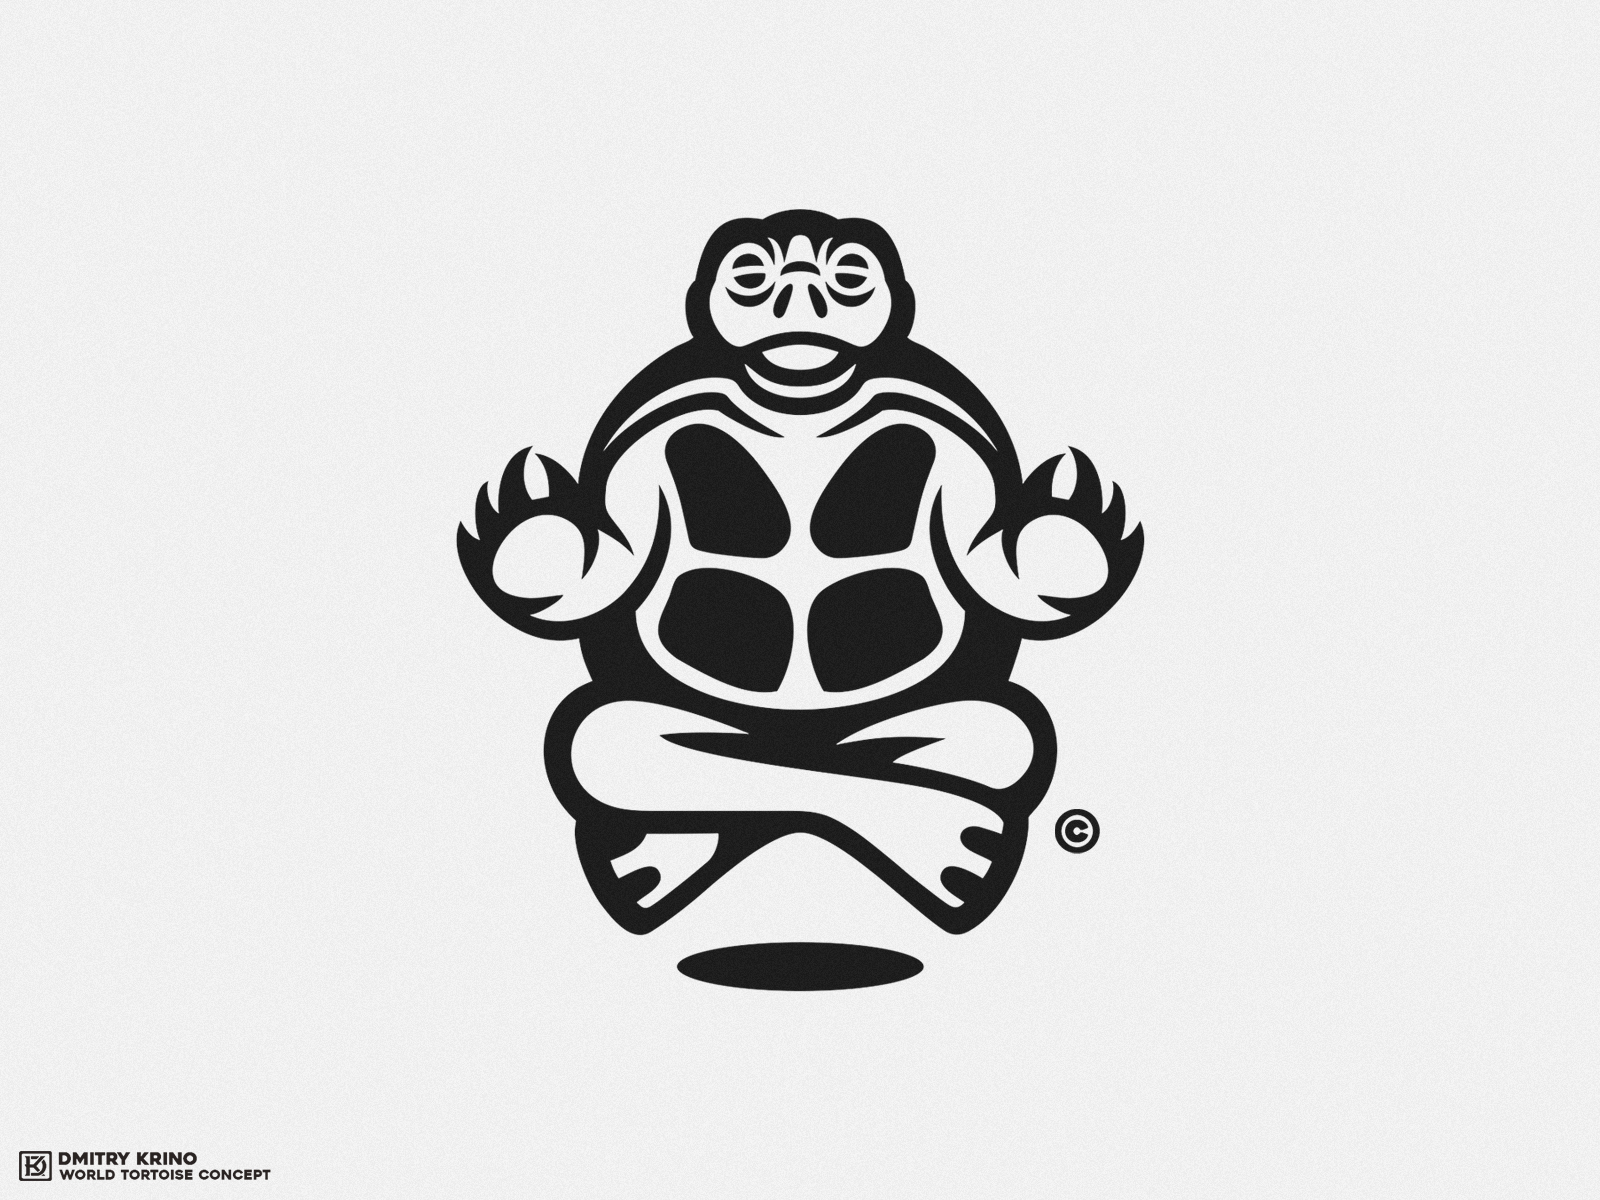 Meditation 2d 2d art animal logo dmitry krino meditation om reptile space tortoise turtle world yoga